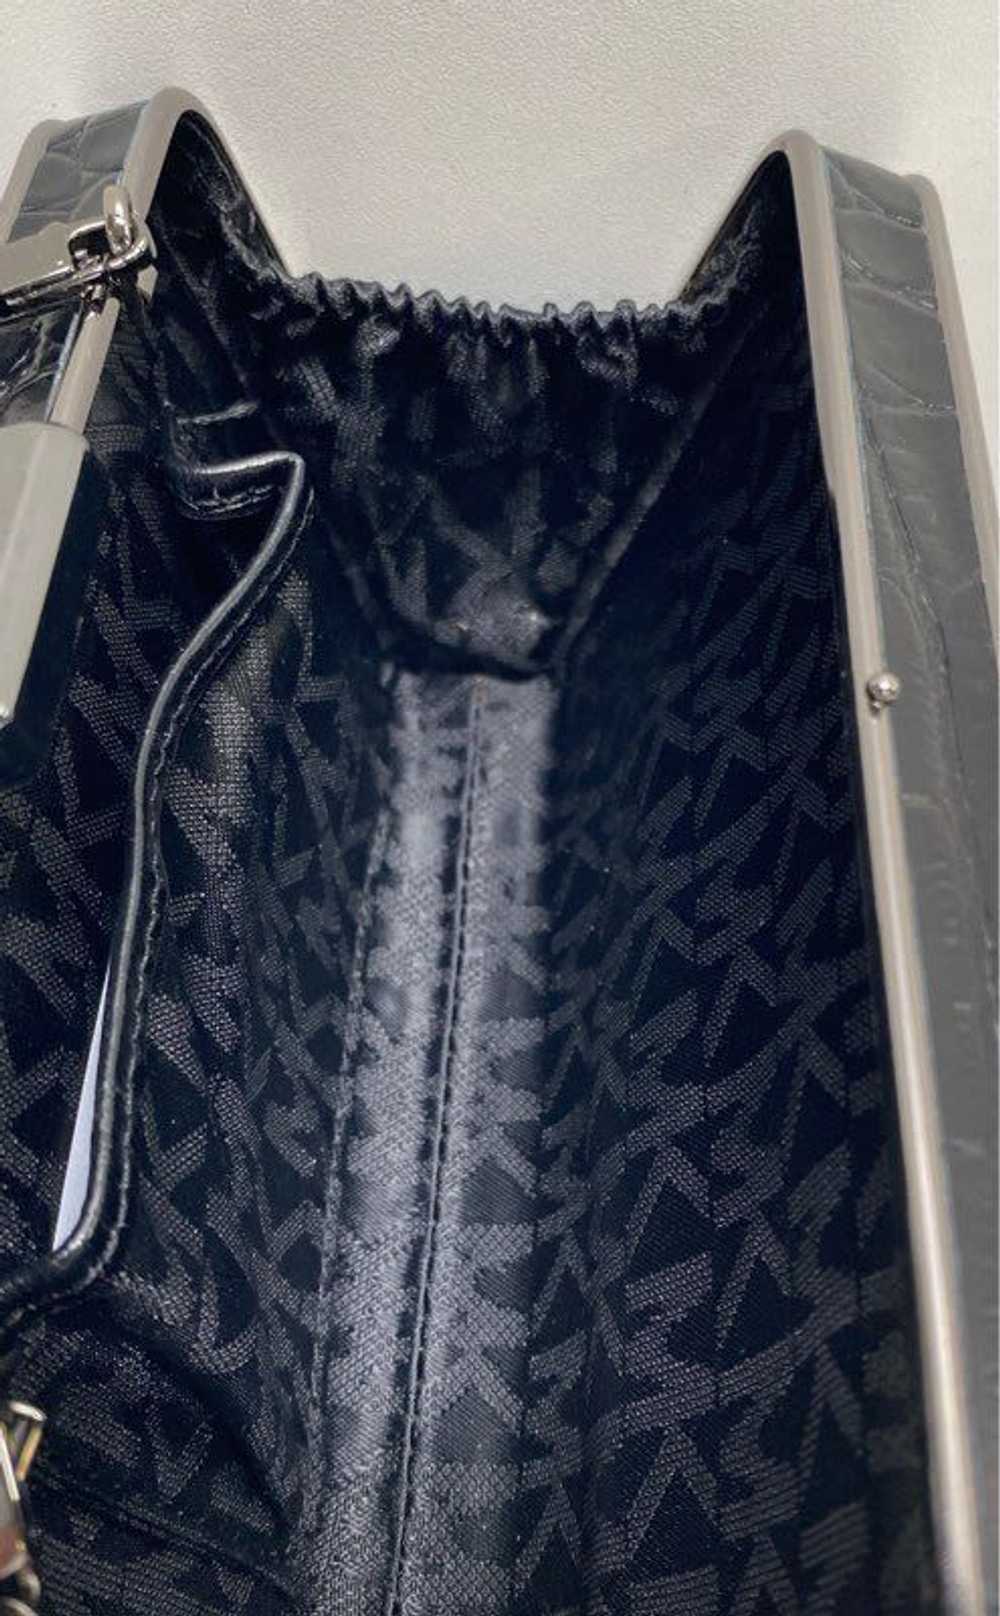 Michael Kors Crossbody Bag Black Fur - image 6